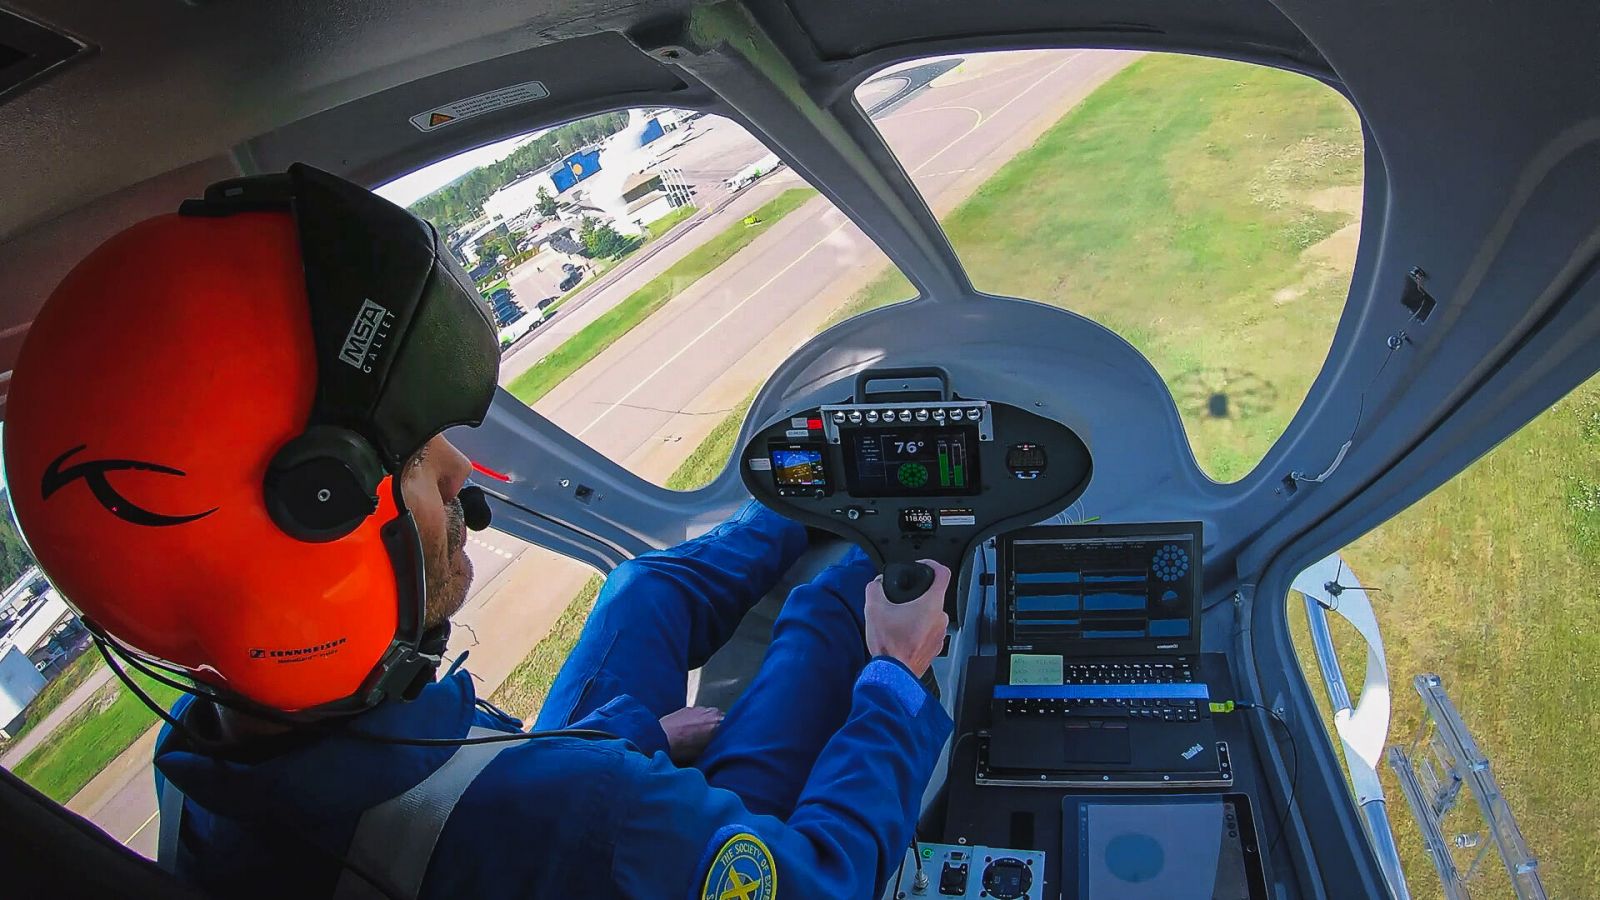 Testpilot Damian Hischier fliegt ein eVOTL von Volocopter. ©Volocopter